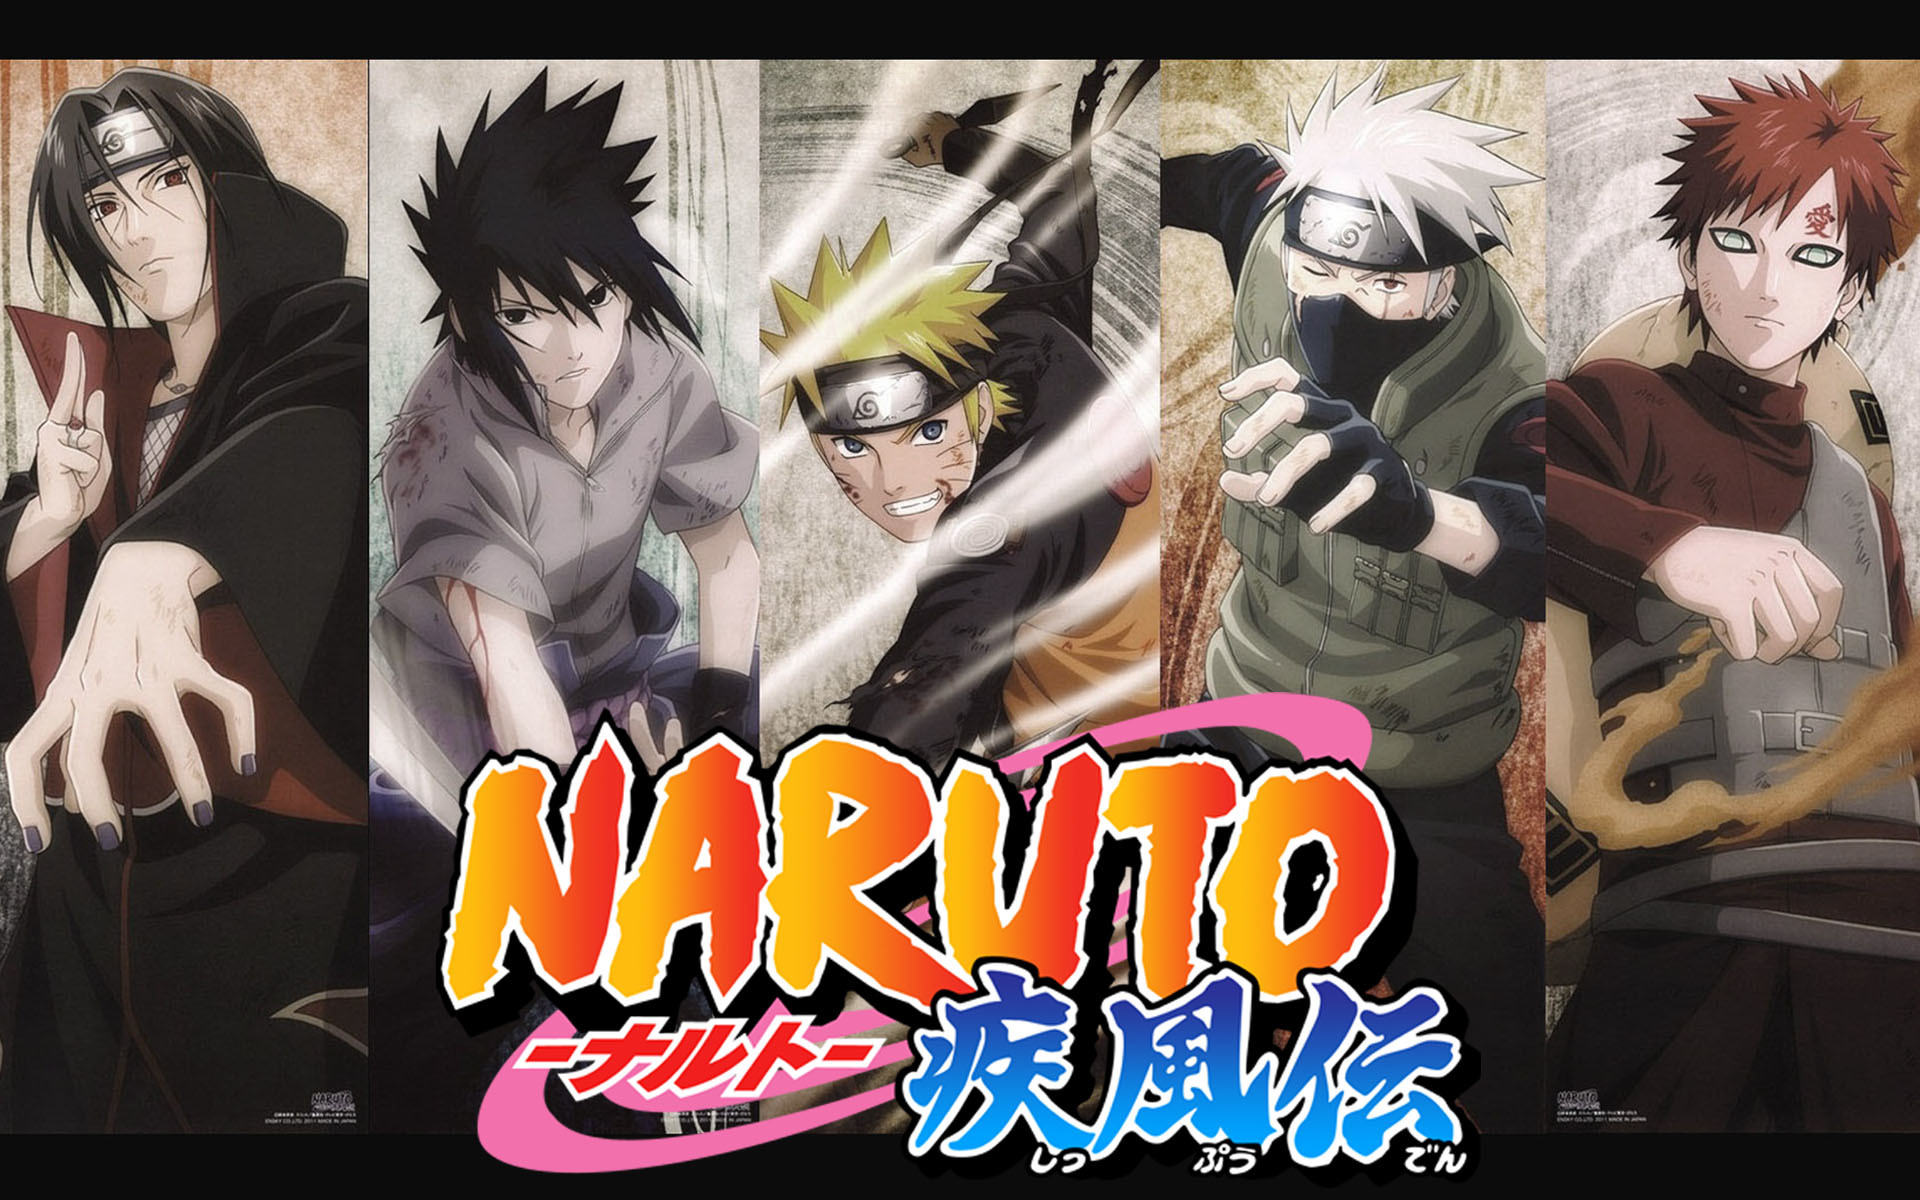 Anime – Naruto Itachi Uchiha Sasuke Uchiha Naruto Uzumaki Kakashi Hatake Gaara Naruto Wallpaper